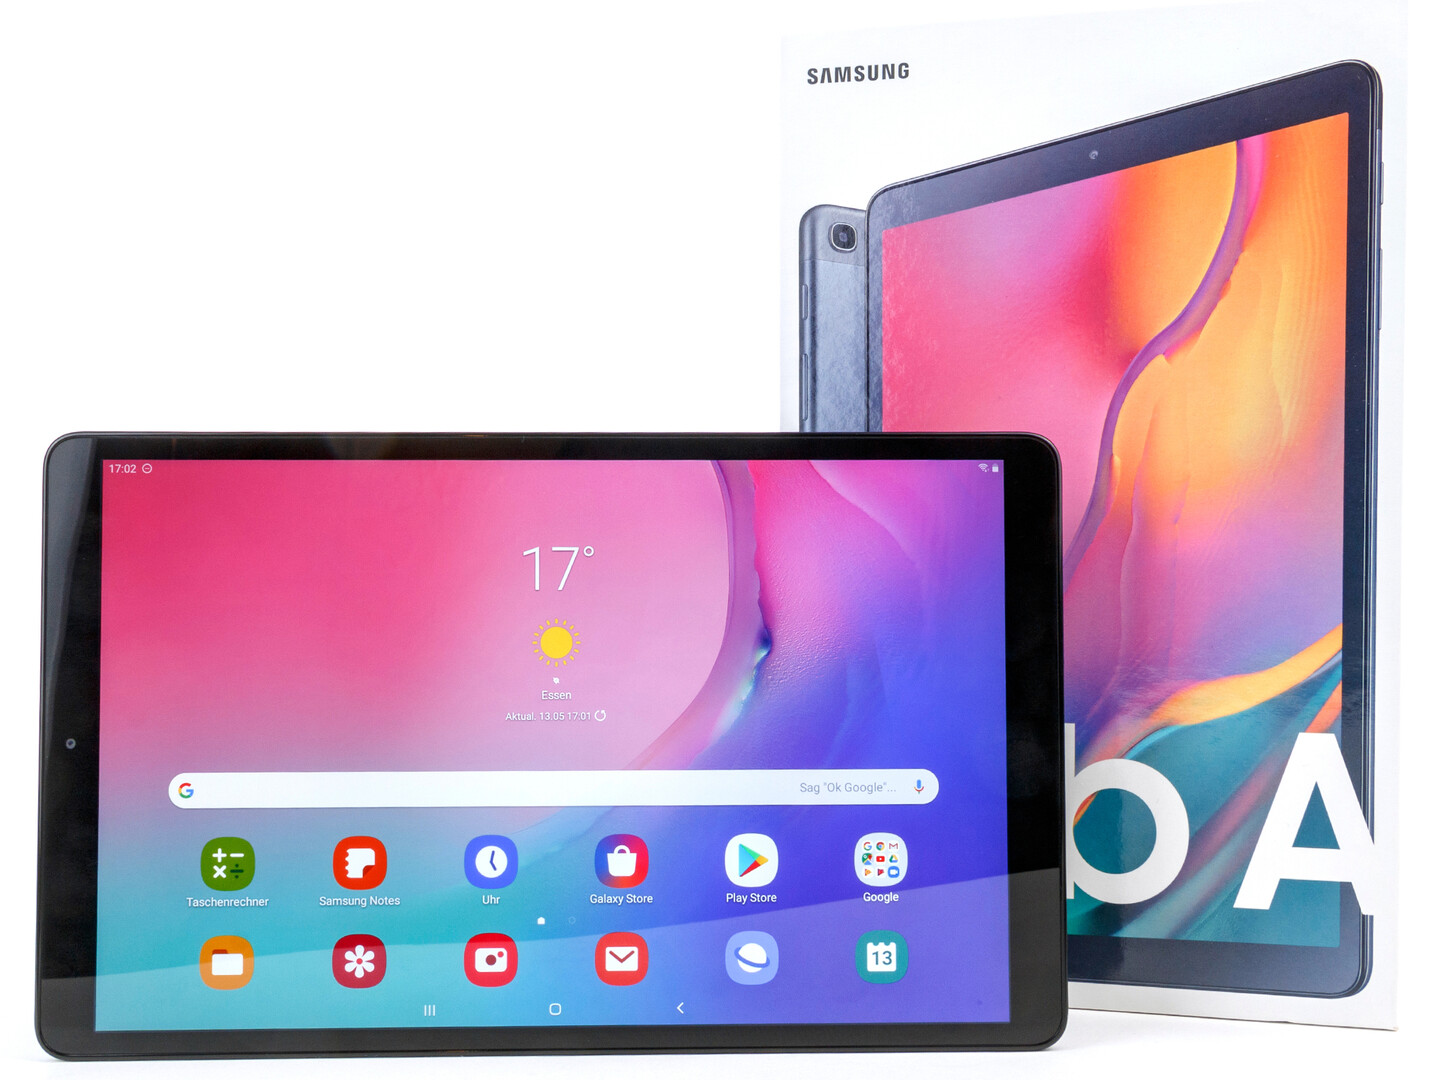 Csm Samsung Galaxy Tab A 10.1 2019 5845 63ea83b16a